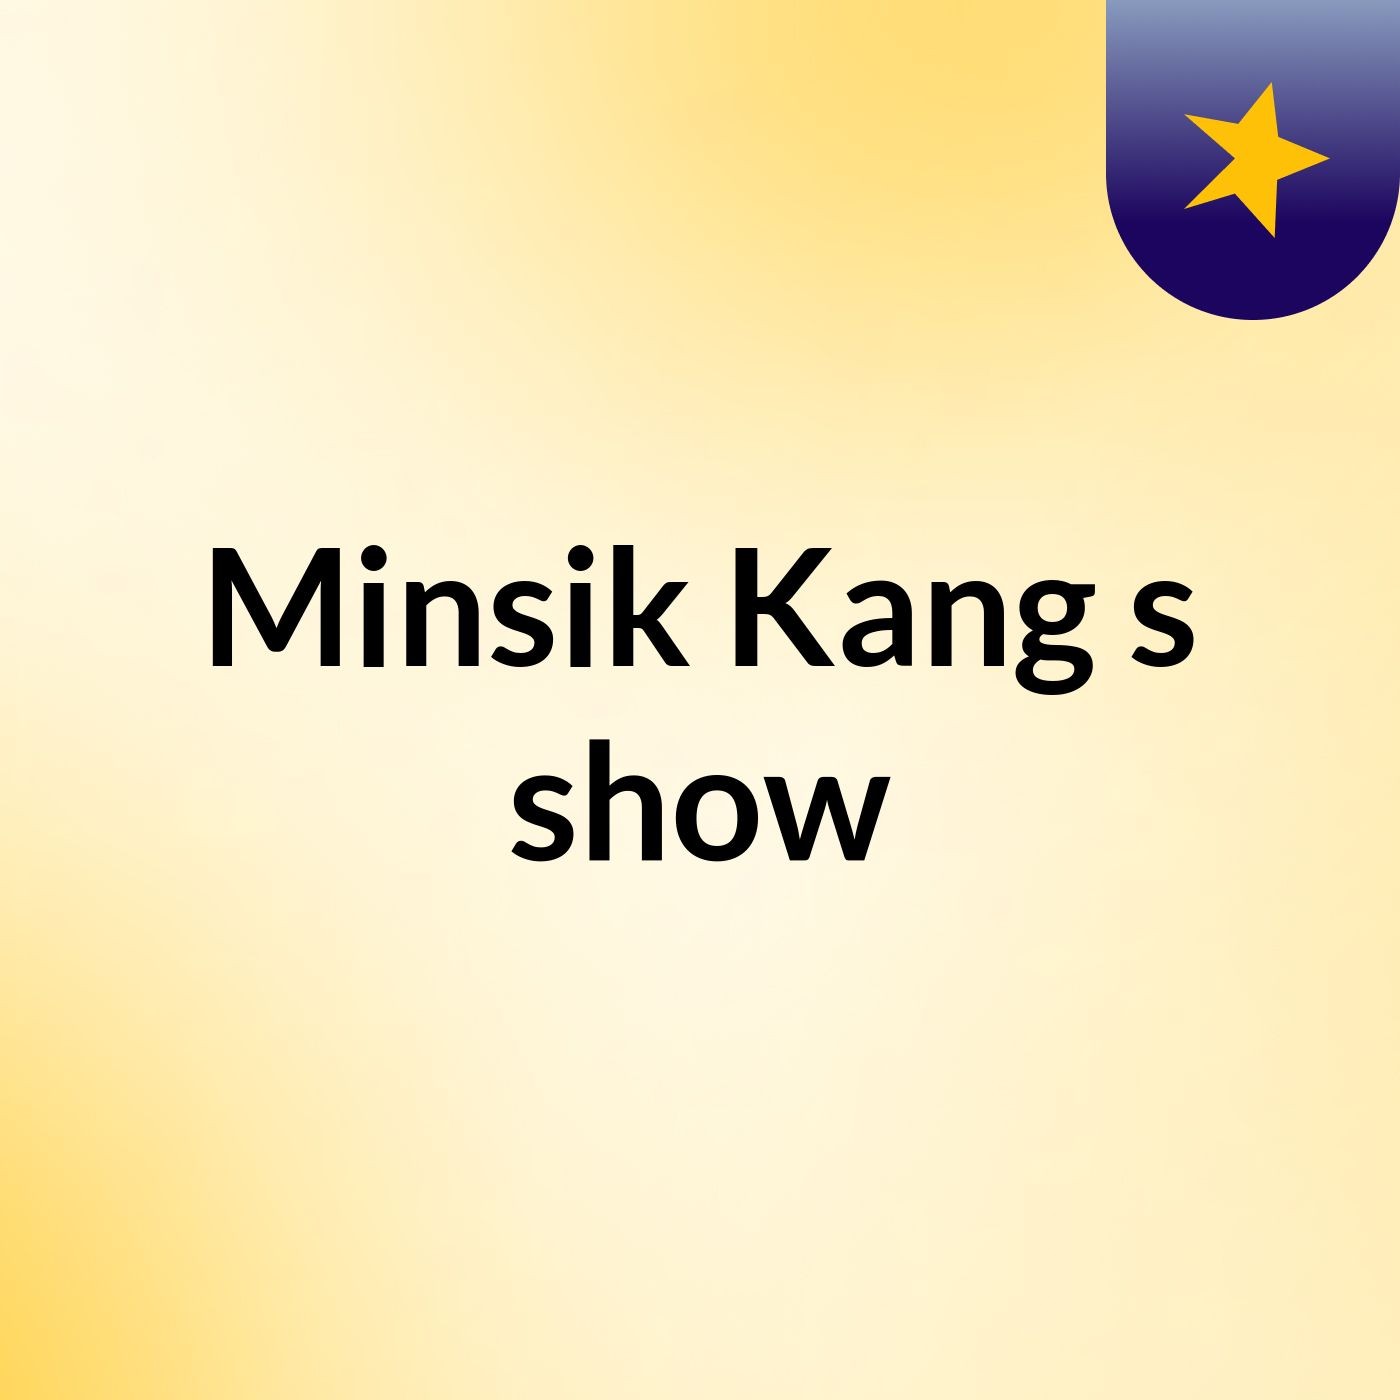 Minsik Kang's show